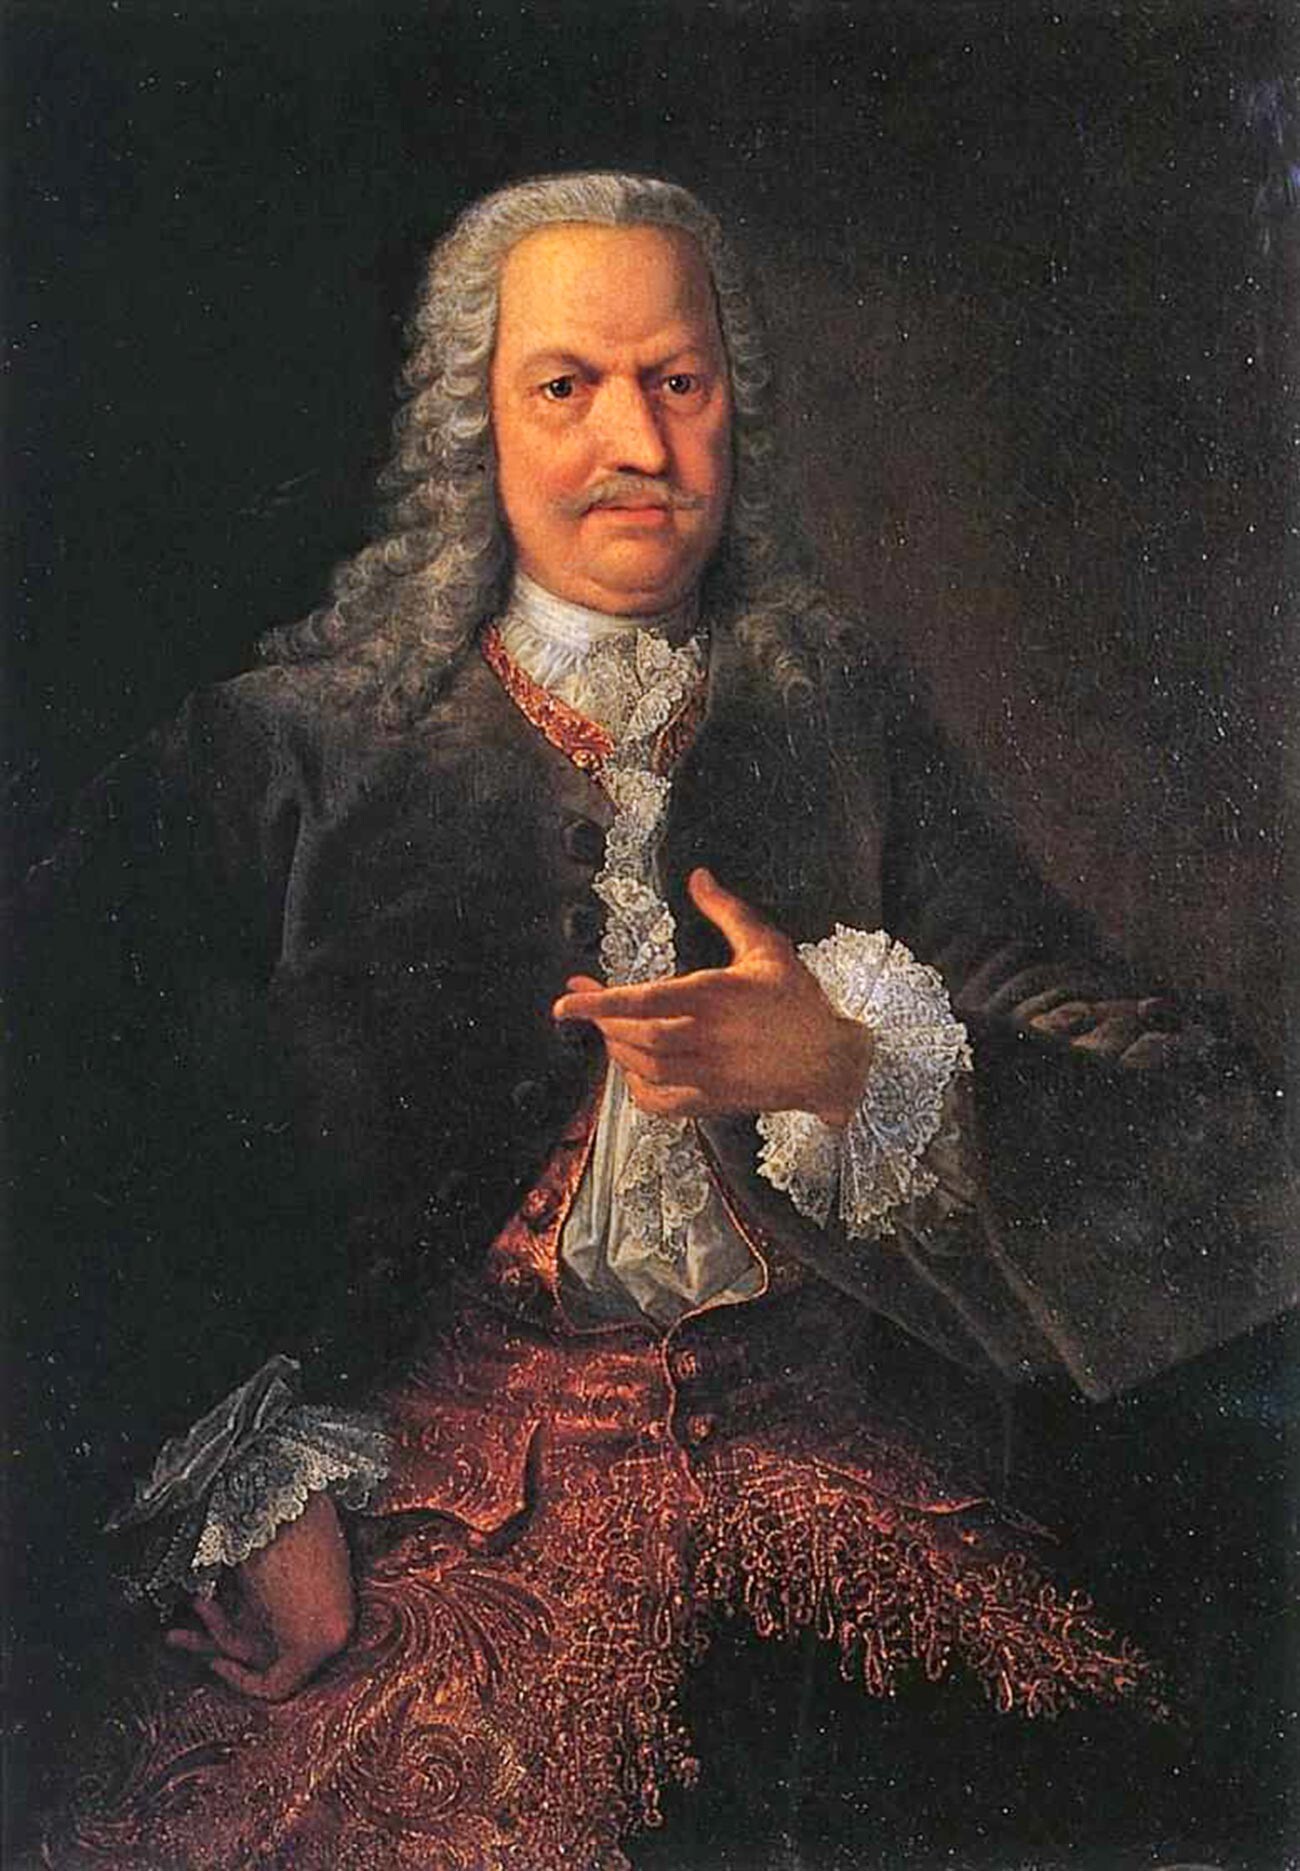 Porträt von Akinfij Demidow von Georg Christoph Grooth, 1740er Jahre. Demidow war ein berühmter russischer Industrieller.